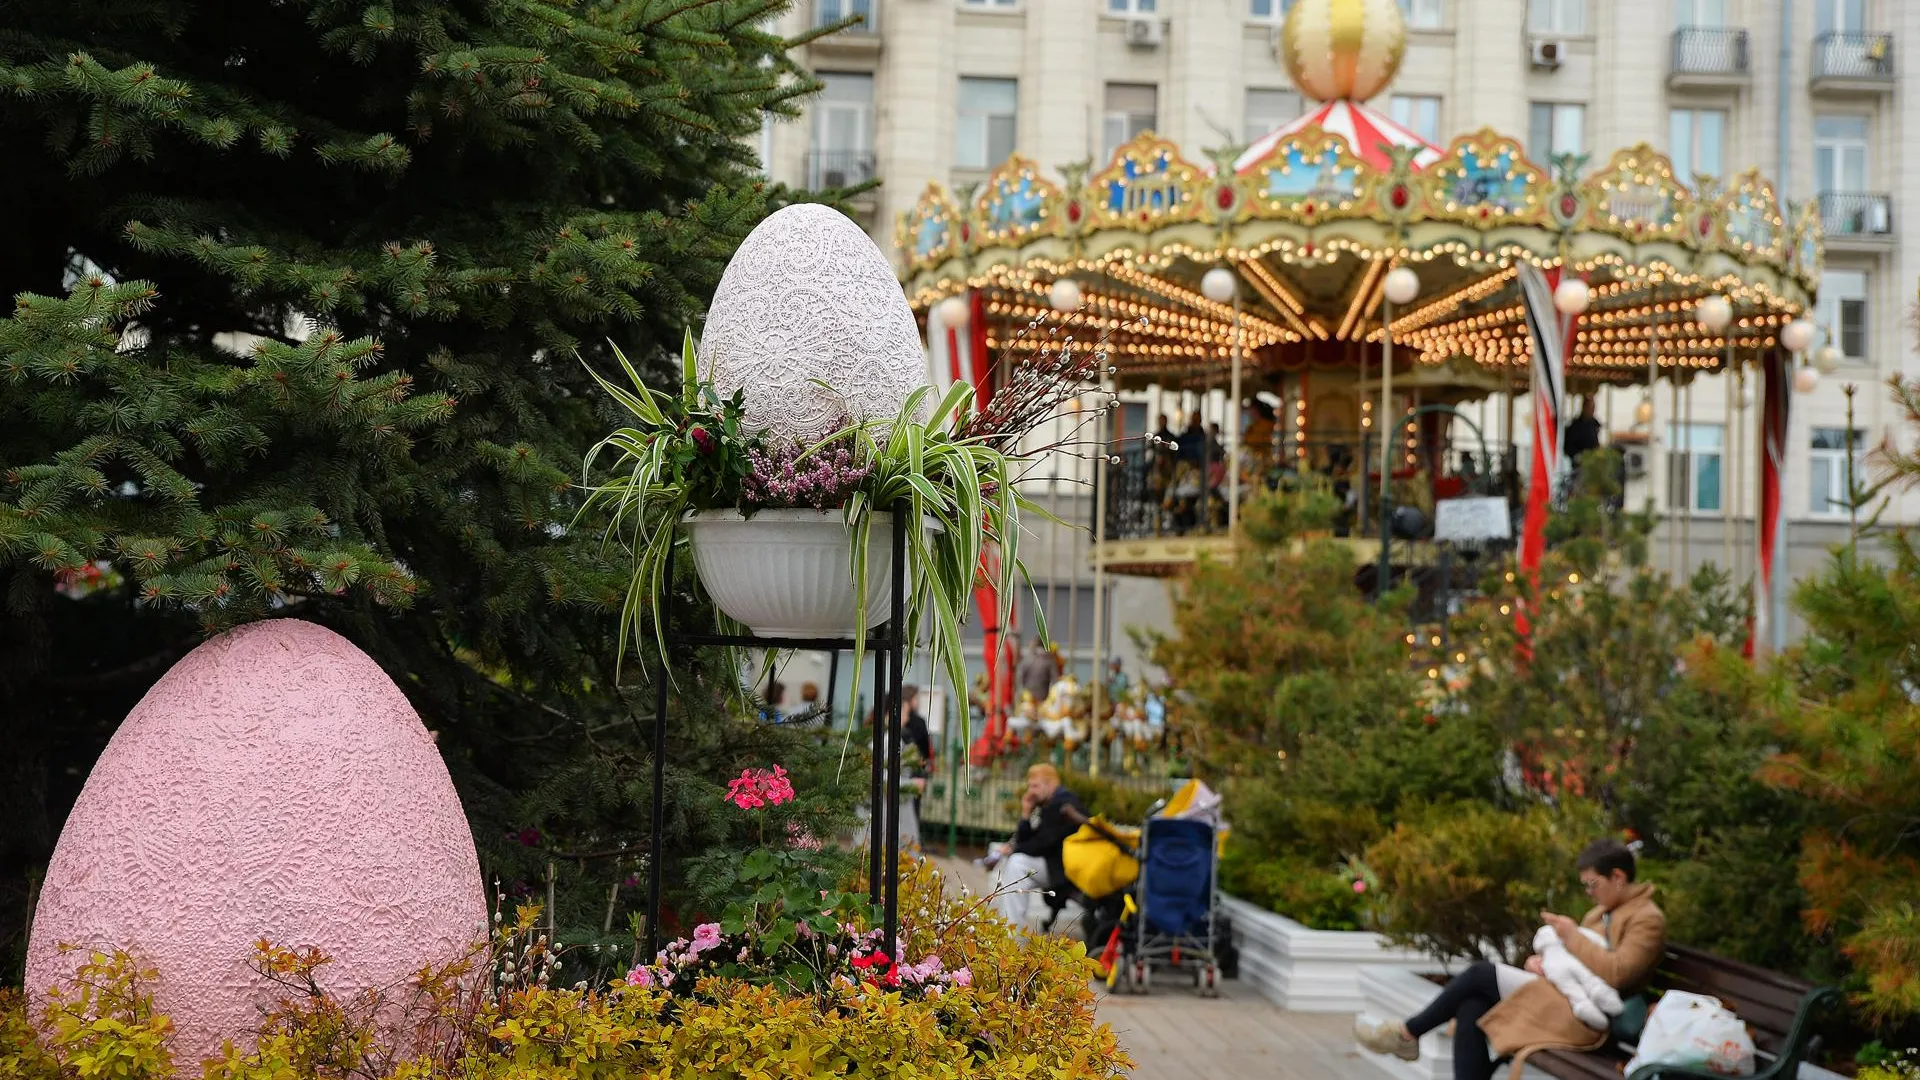 Цветы и увитые травами качели: гостей ждут площадки «Пасхального дара» в Москве